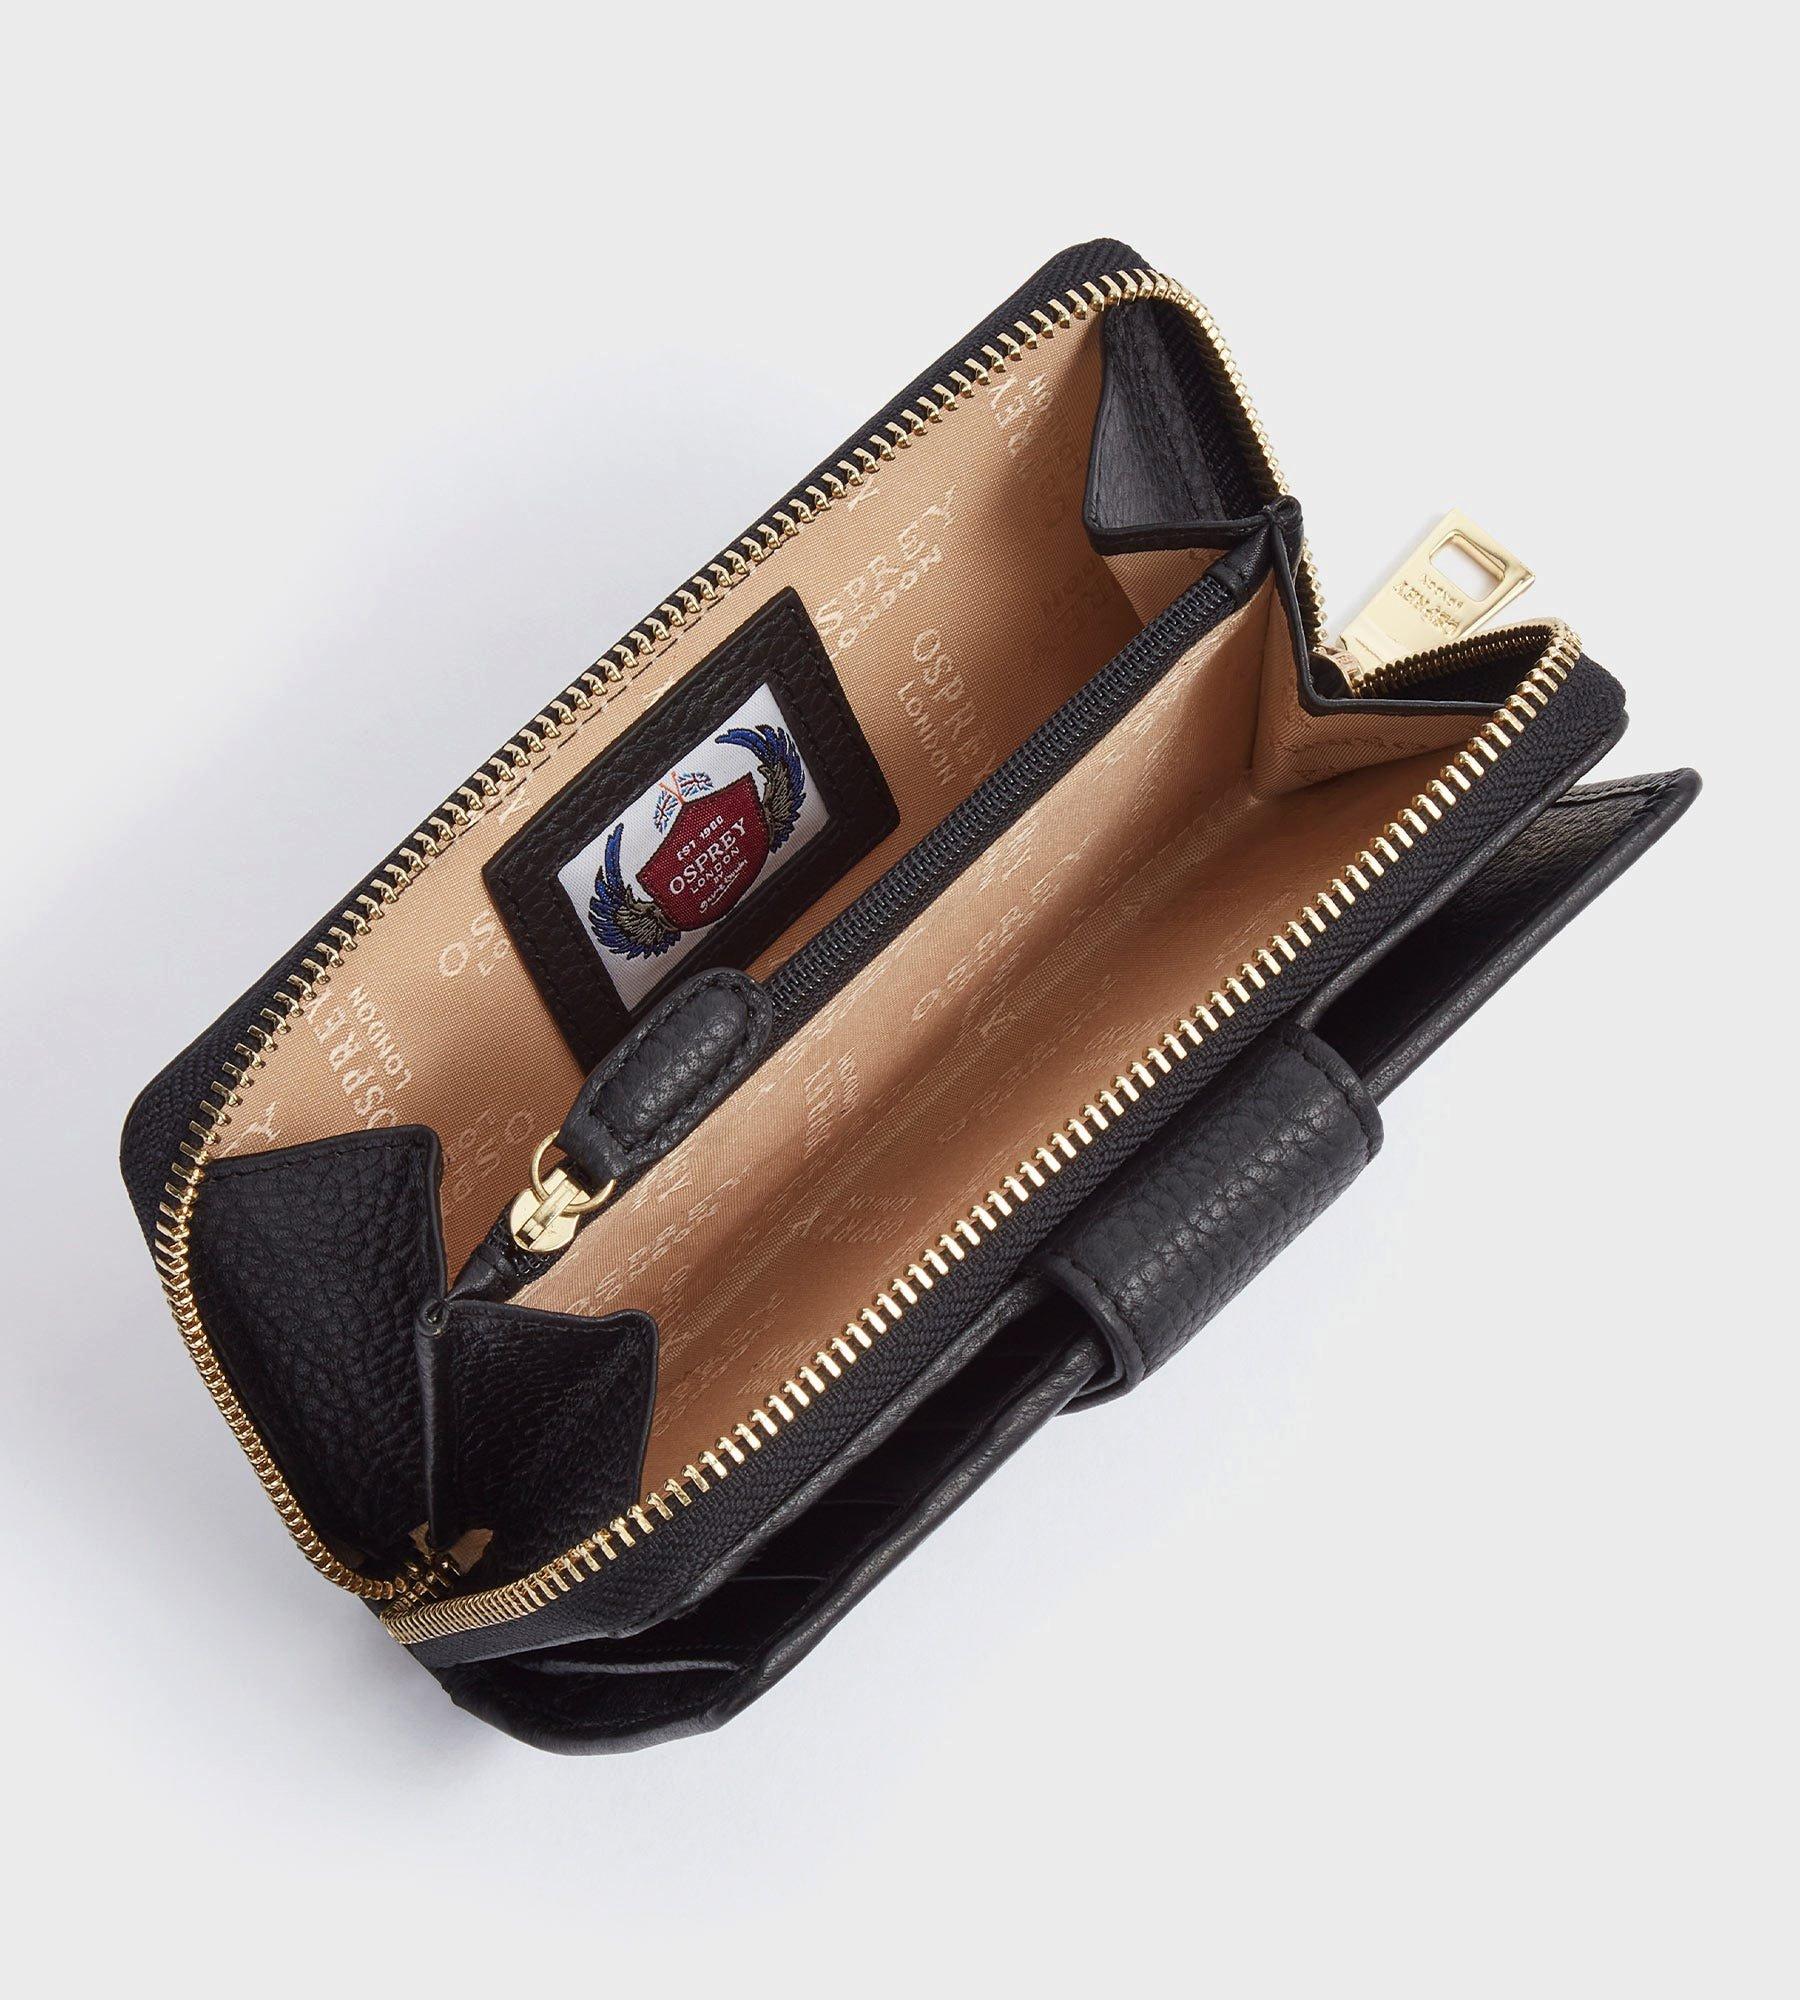 The Santa Fe Leather Billfold Wallet in tan | OSPREY LONDON